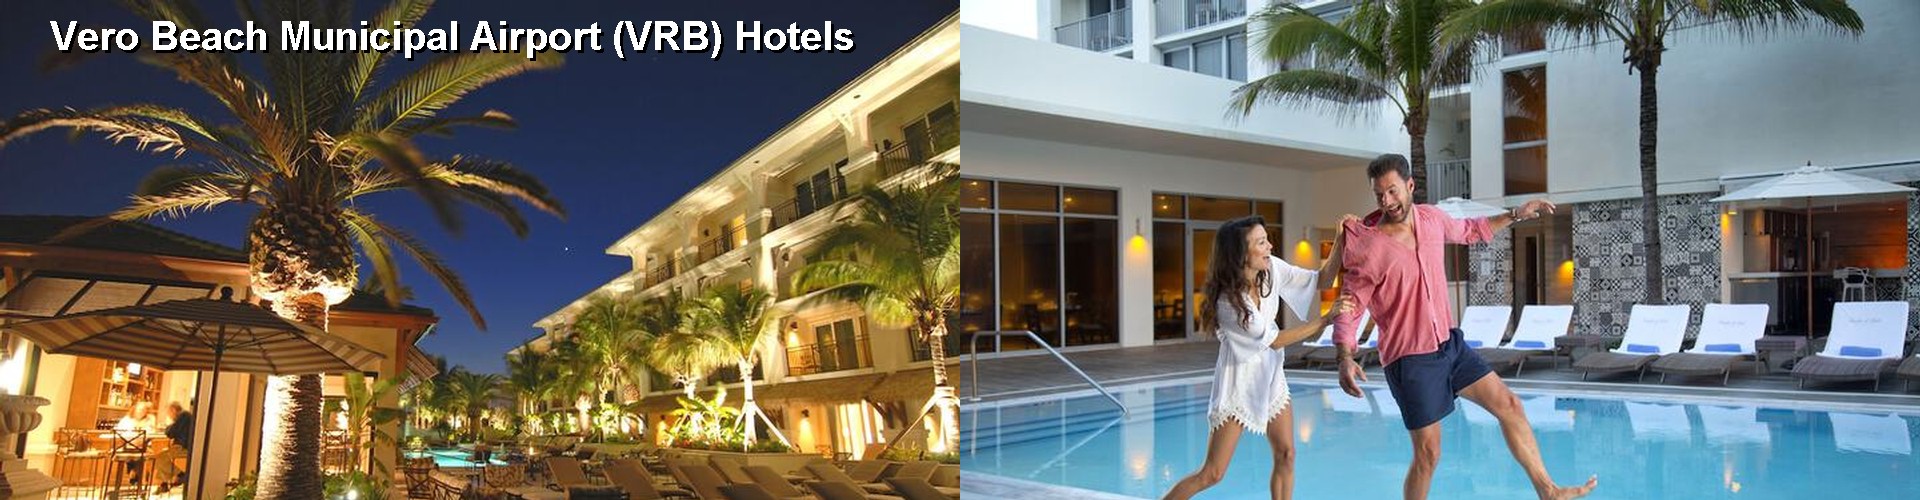 5 Best Hotels near Vero Beach Municipal Airport (VRB)